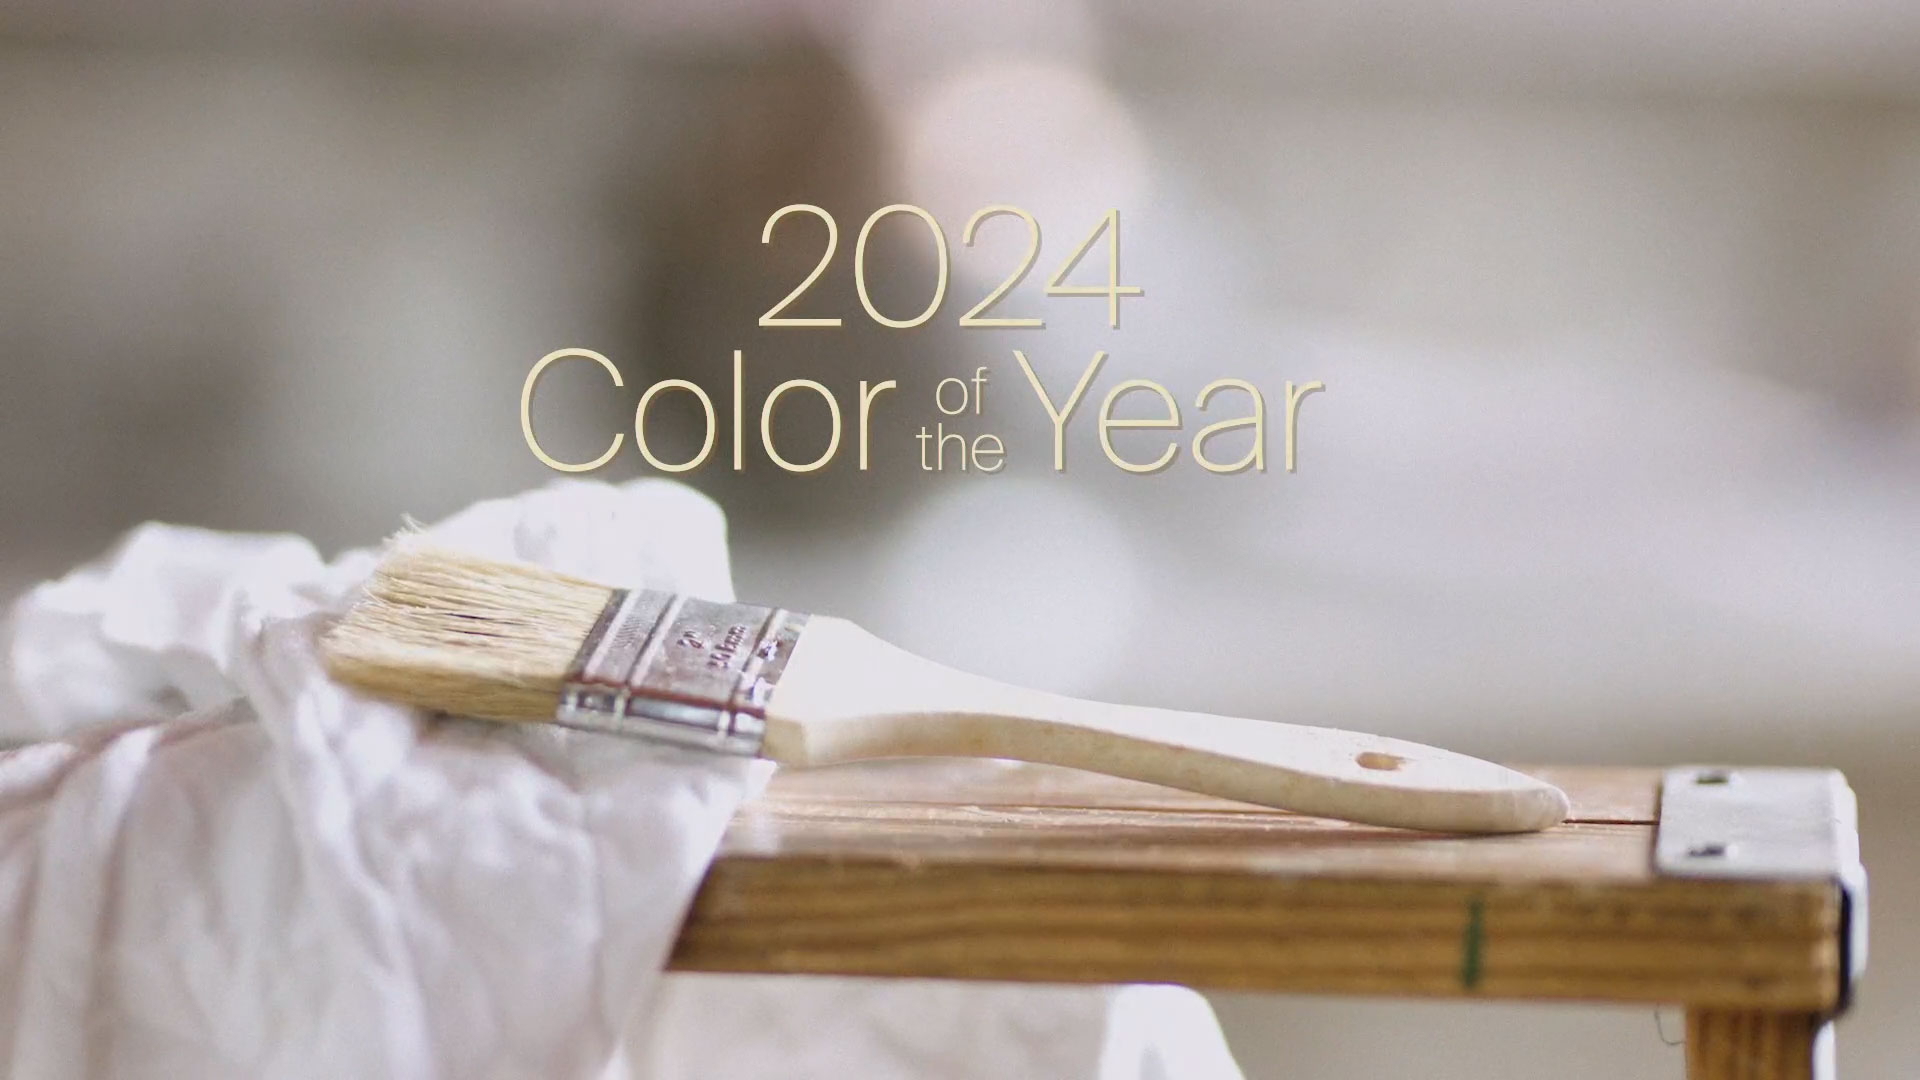 该影片将色彩结合律动，赞颂PPG 2024年度色彩Limitless，同时揉合色彩在人的一生中象征的意义，庆祝全球涂料巨头创业140周年。